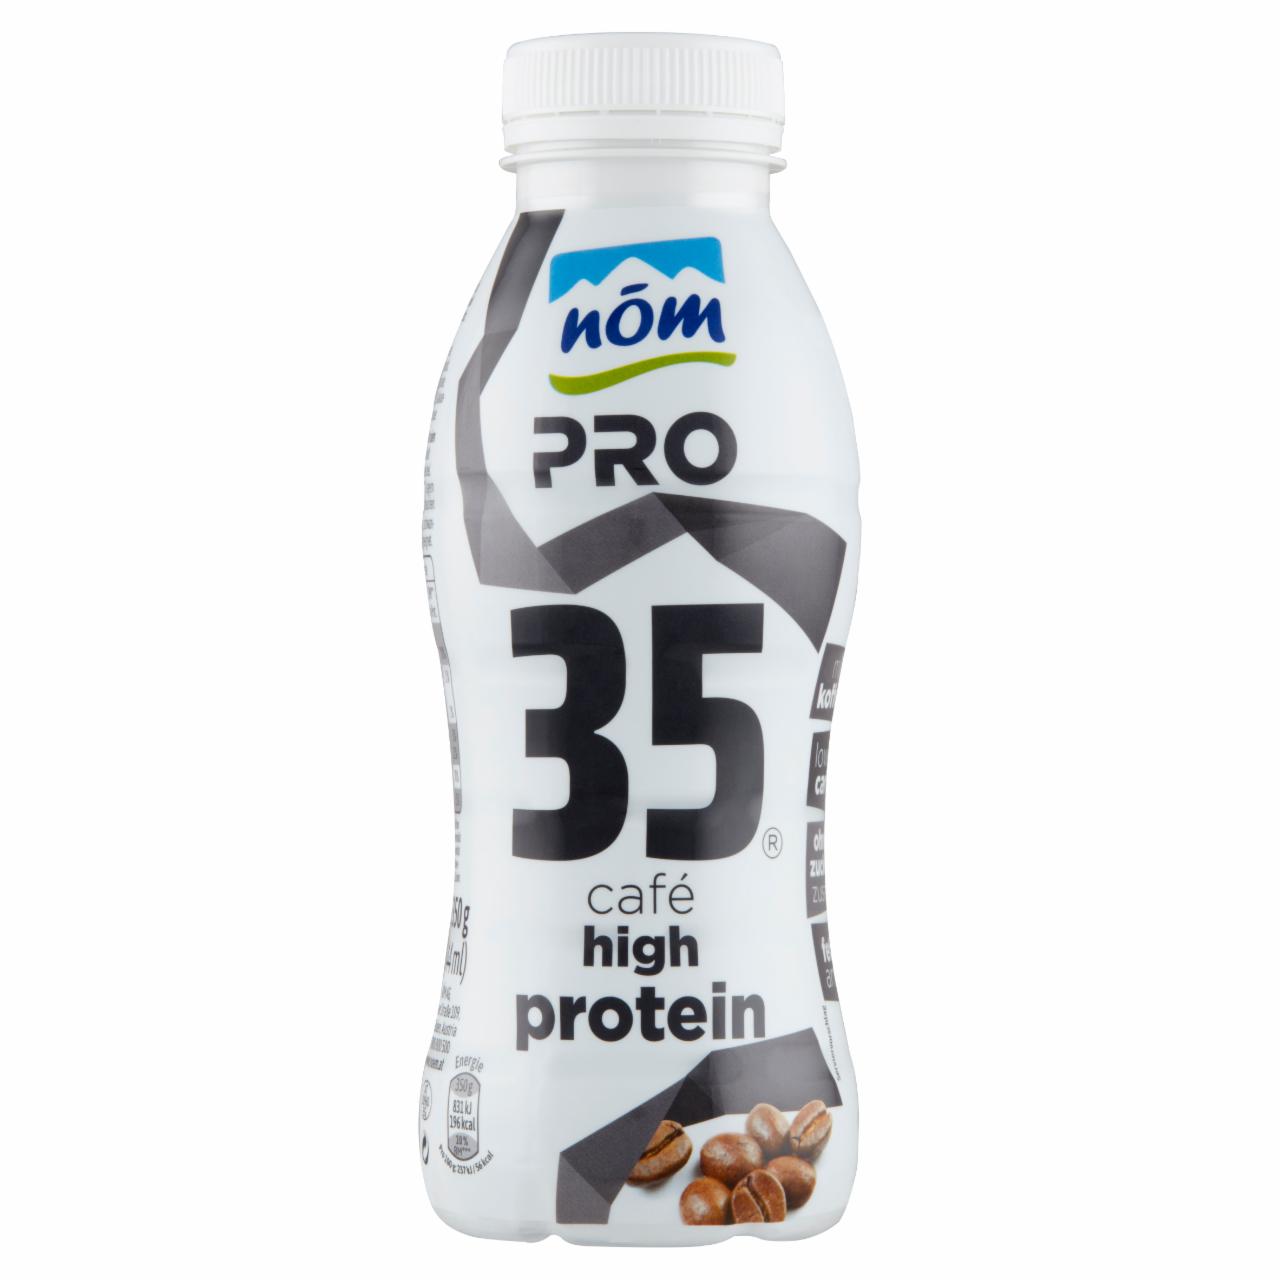 Képek - NÖM PRO proteinital kávés 350 g